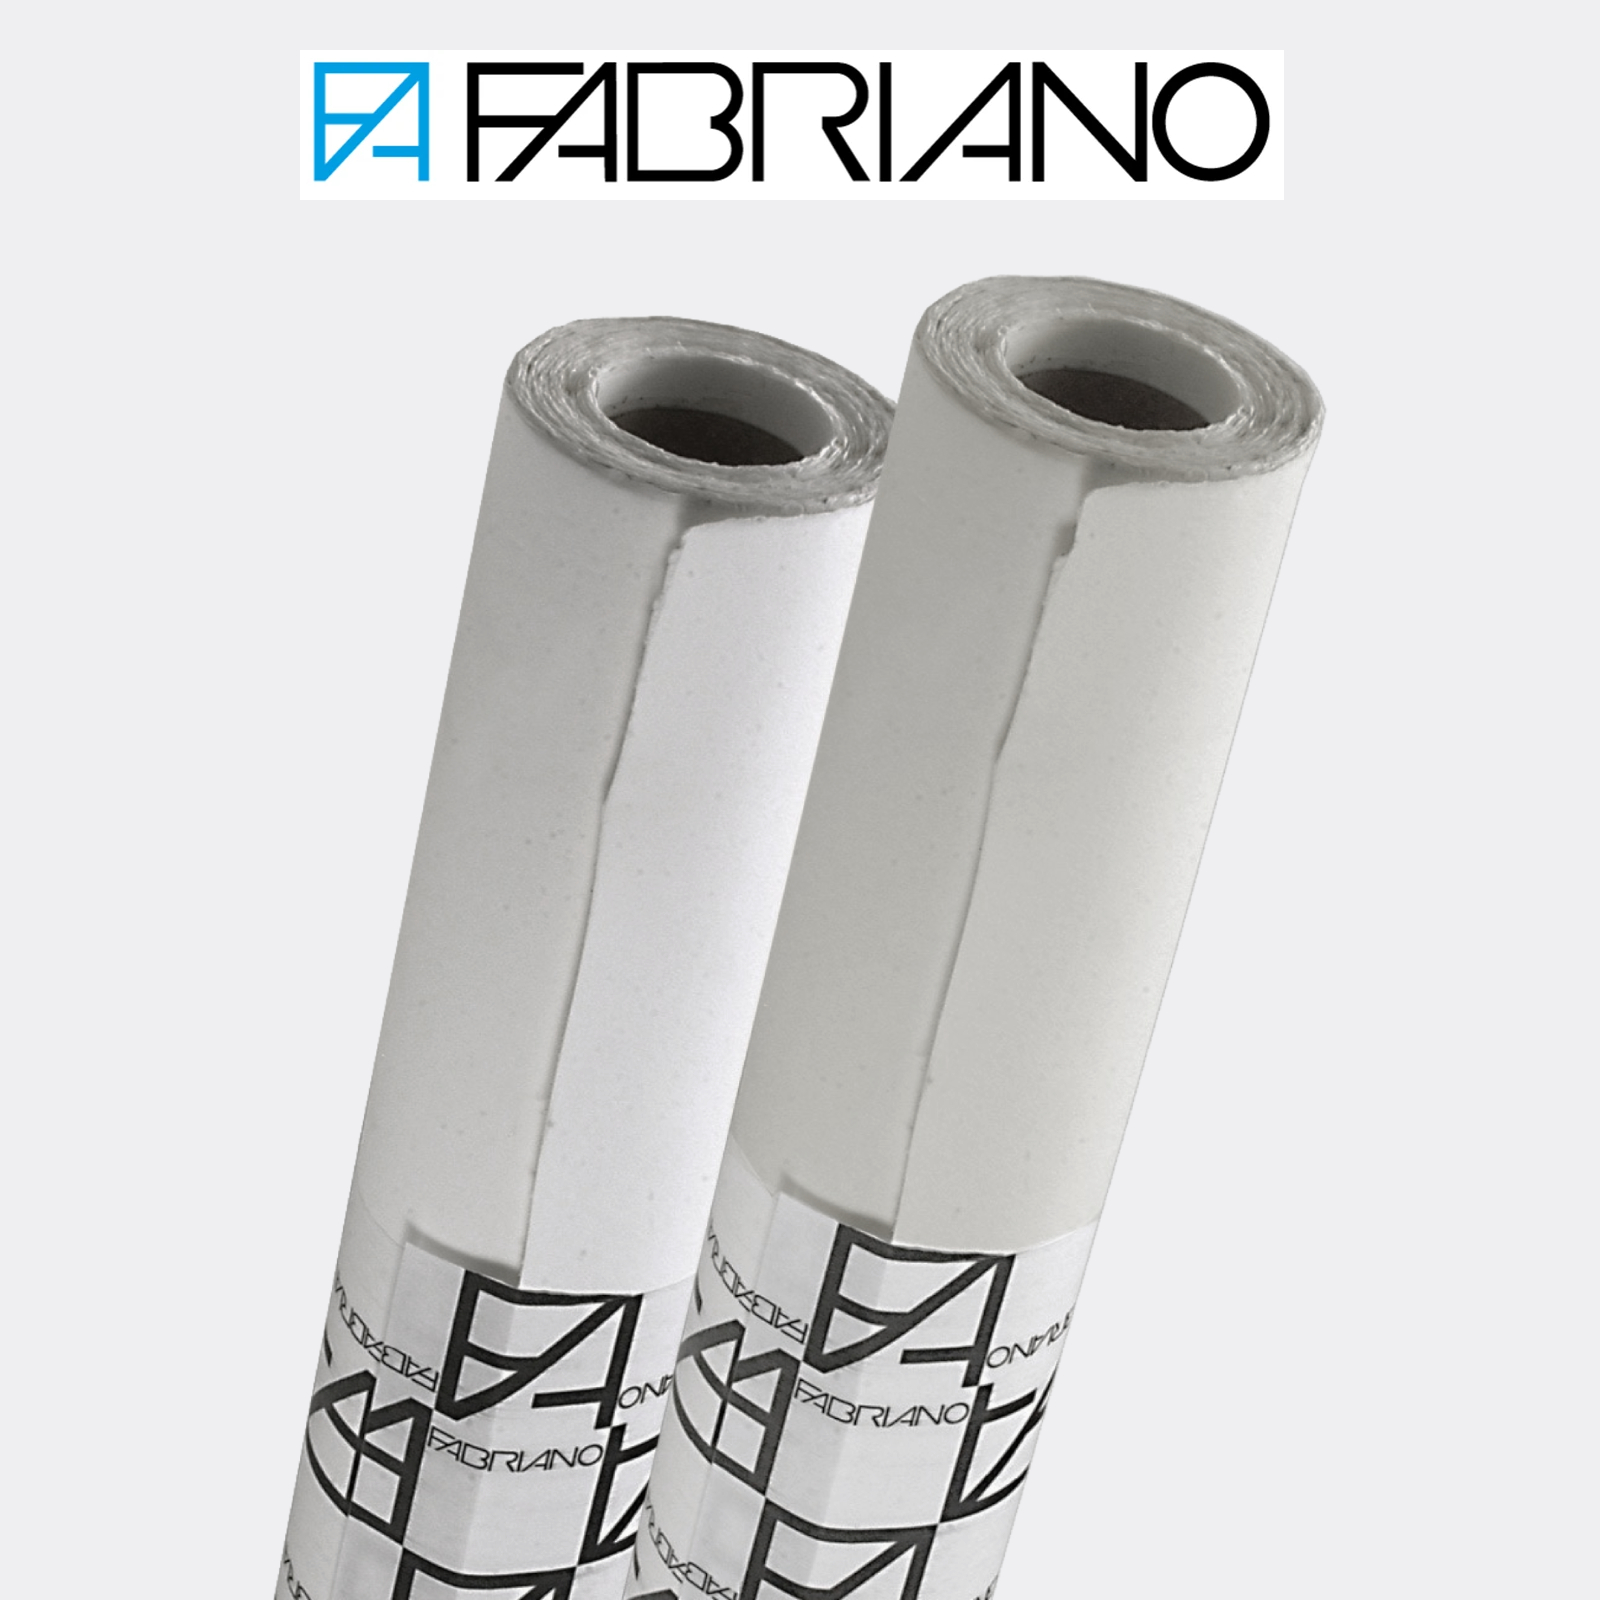 Carta Fabriano Artistico Extra White in rotoli 1,40 x 10 mt per acquerello  - Pellegrini Brera - La Bottega d'Arte di Milano